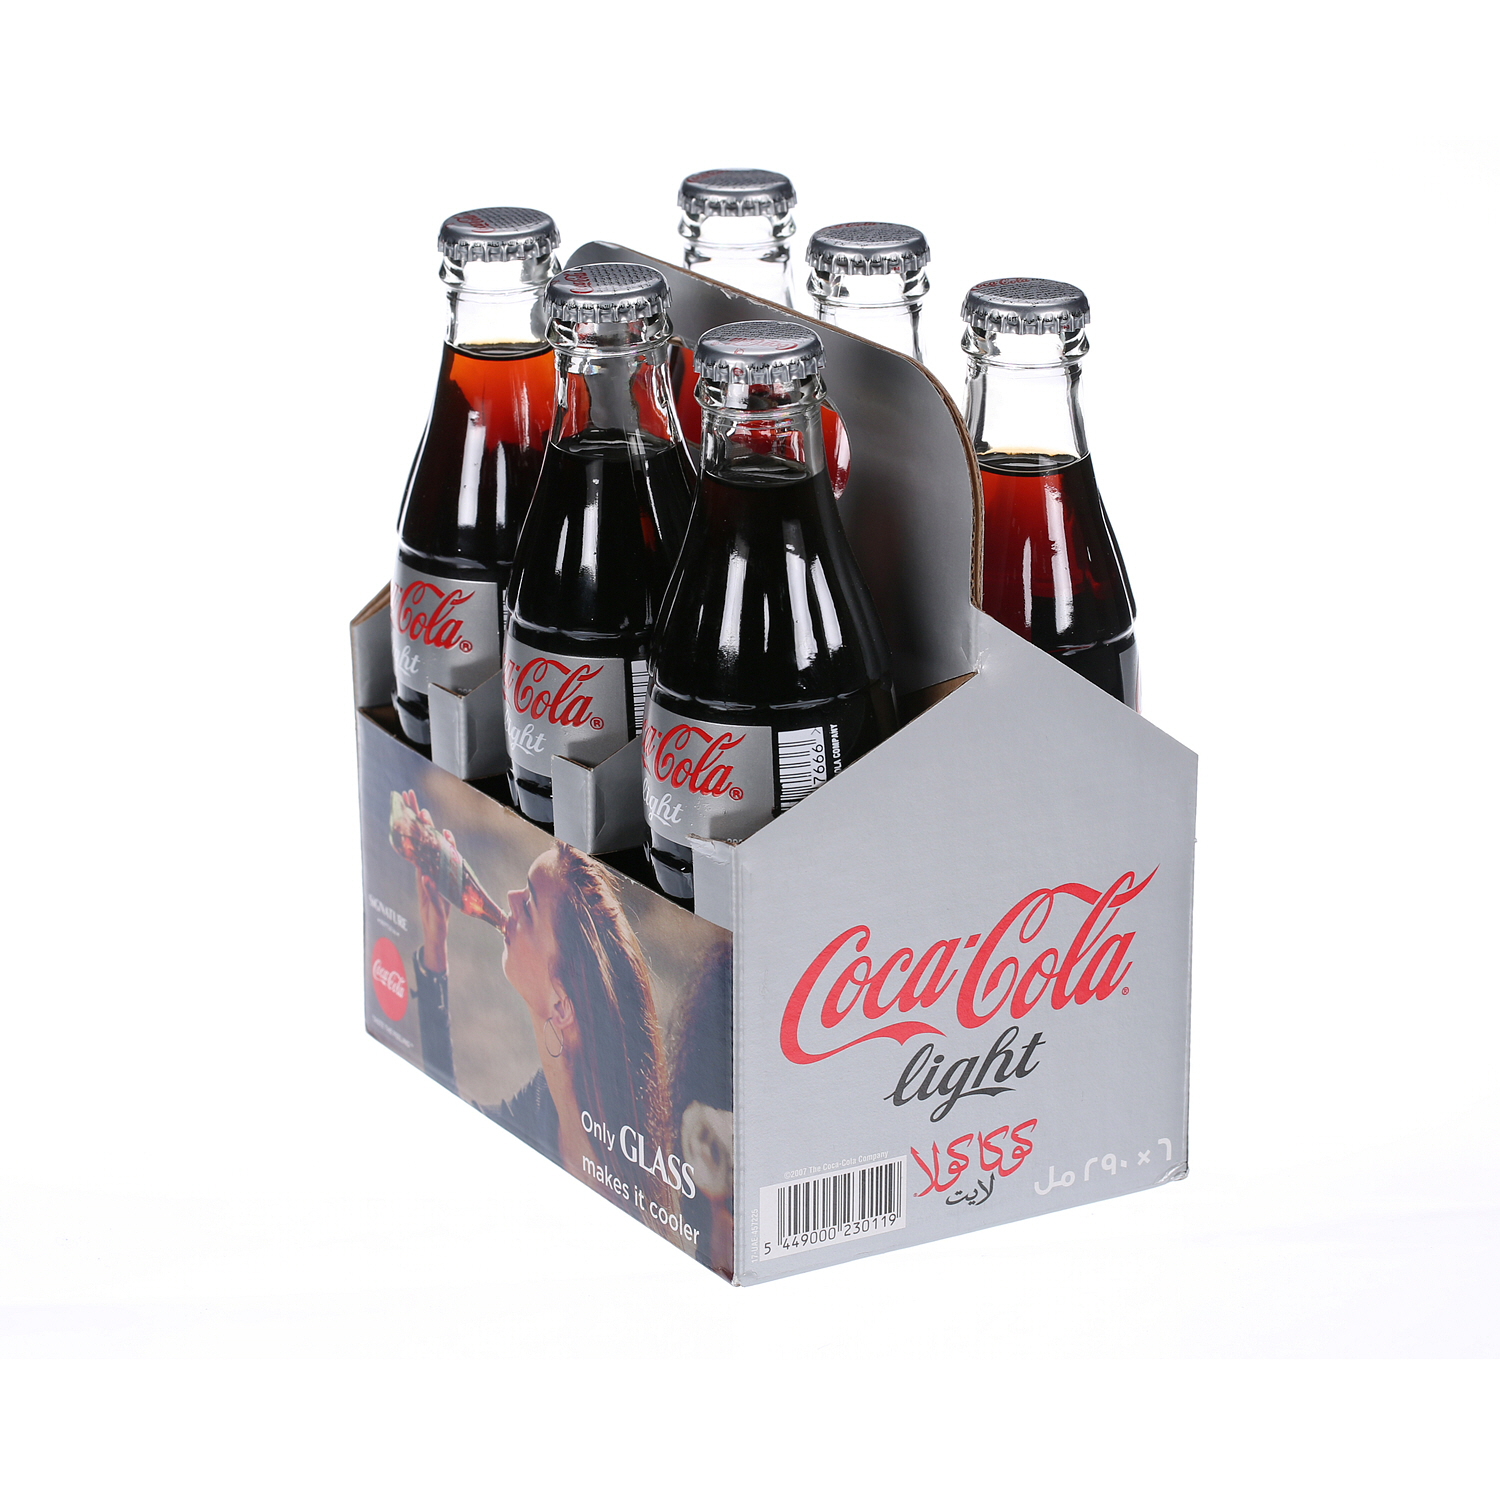 كوكا كولا لايت مشروب غازية عبوة زجاجيه 250 مل × 6 عبوات